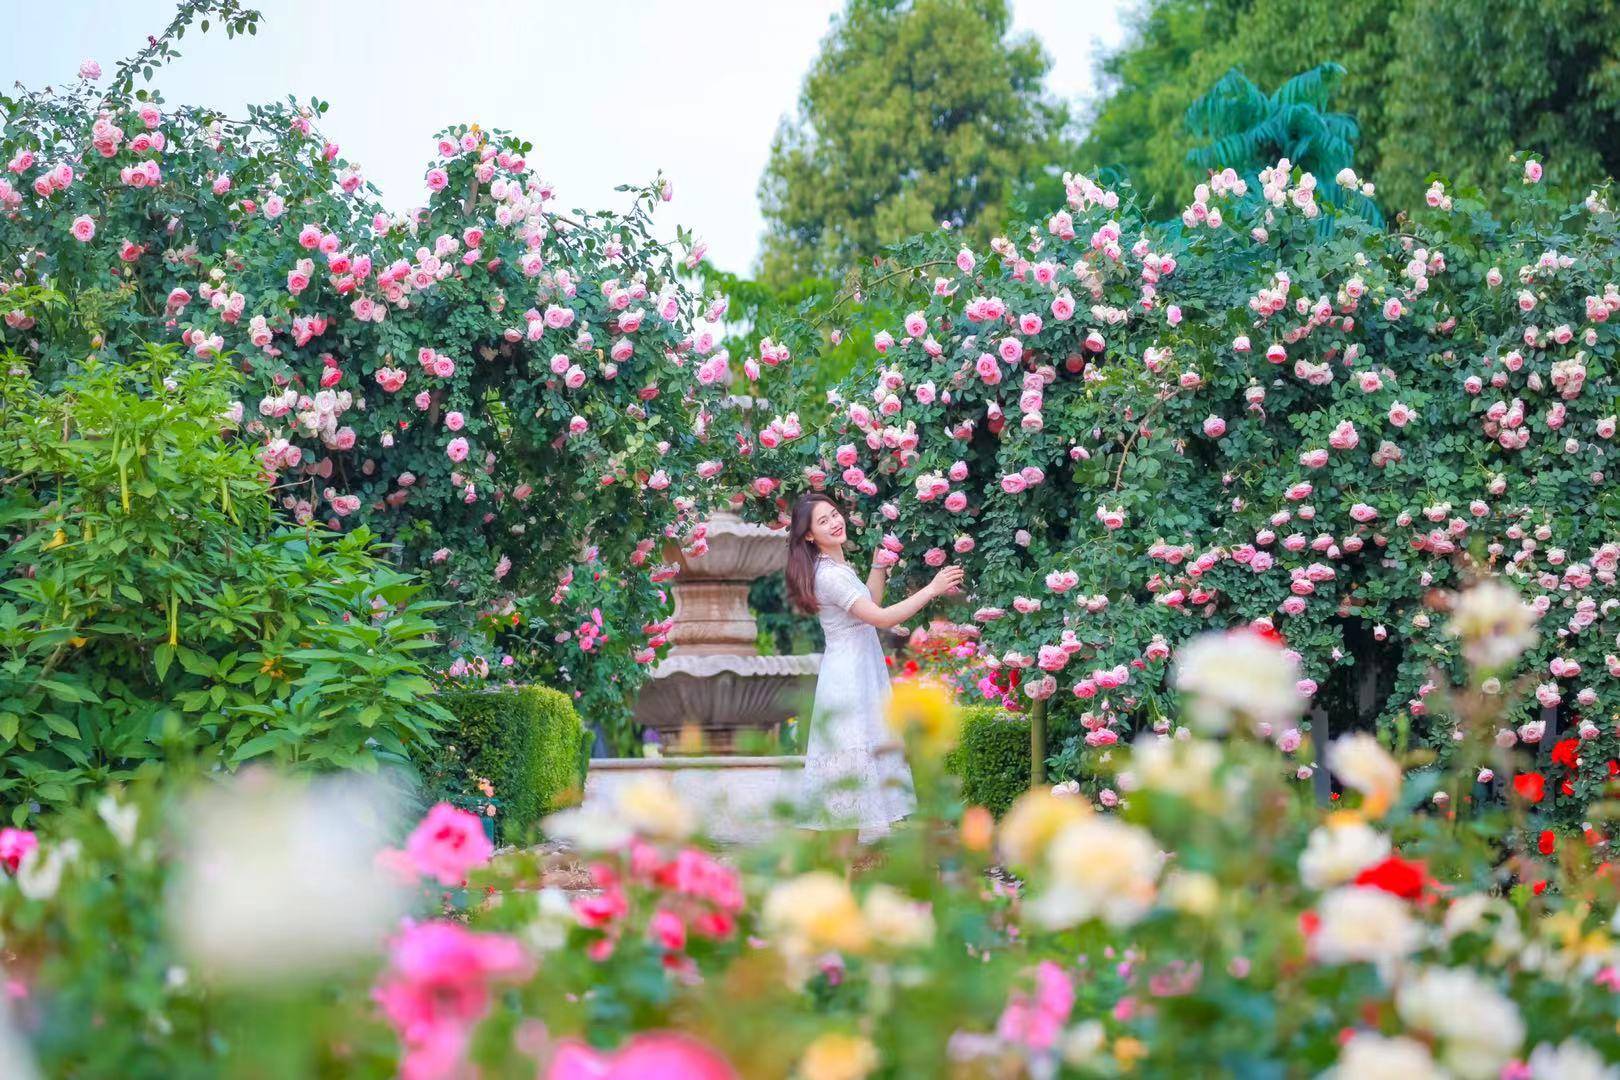 漫花庄园汇集了来自世界各地700余种顶级玫瑰,每年四月中旬至五月中旬